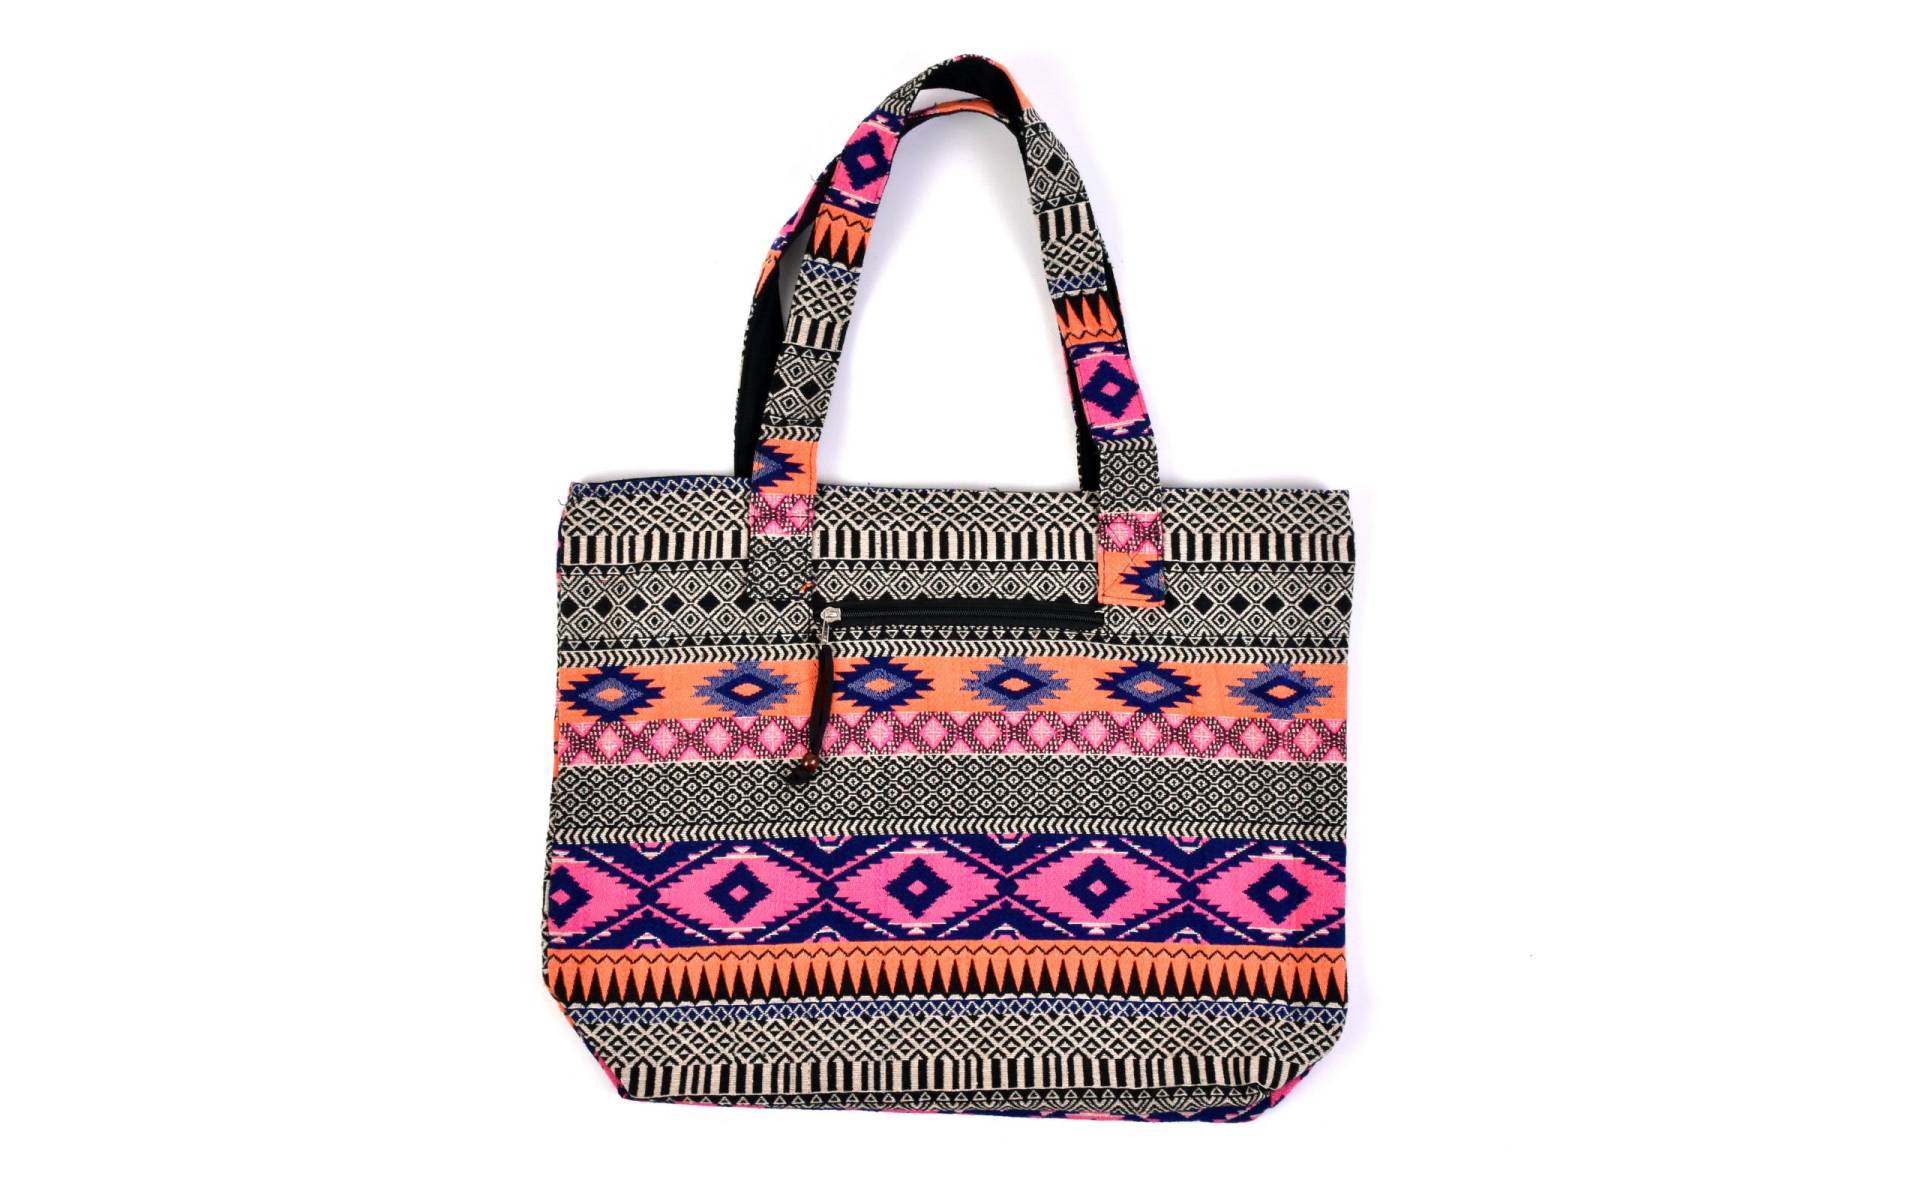 Veľká taška, farebná Aztec design, 2 malé vnútorné vrecká, zips, 51x39cm, 29cm ucho